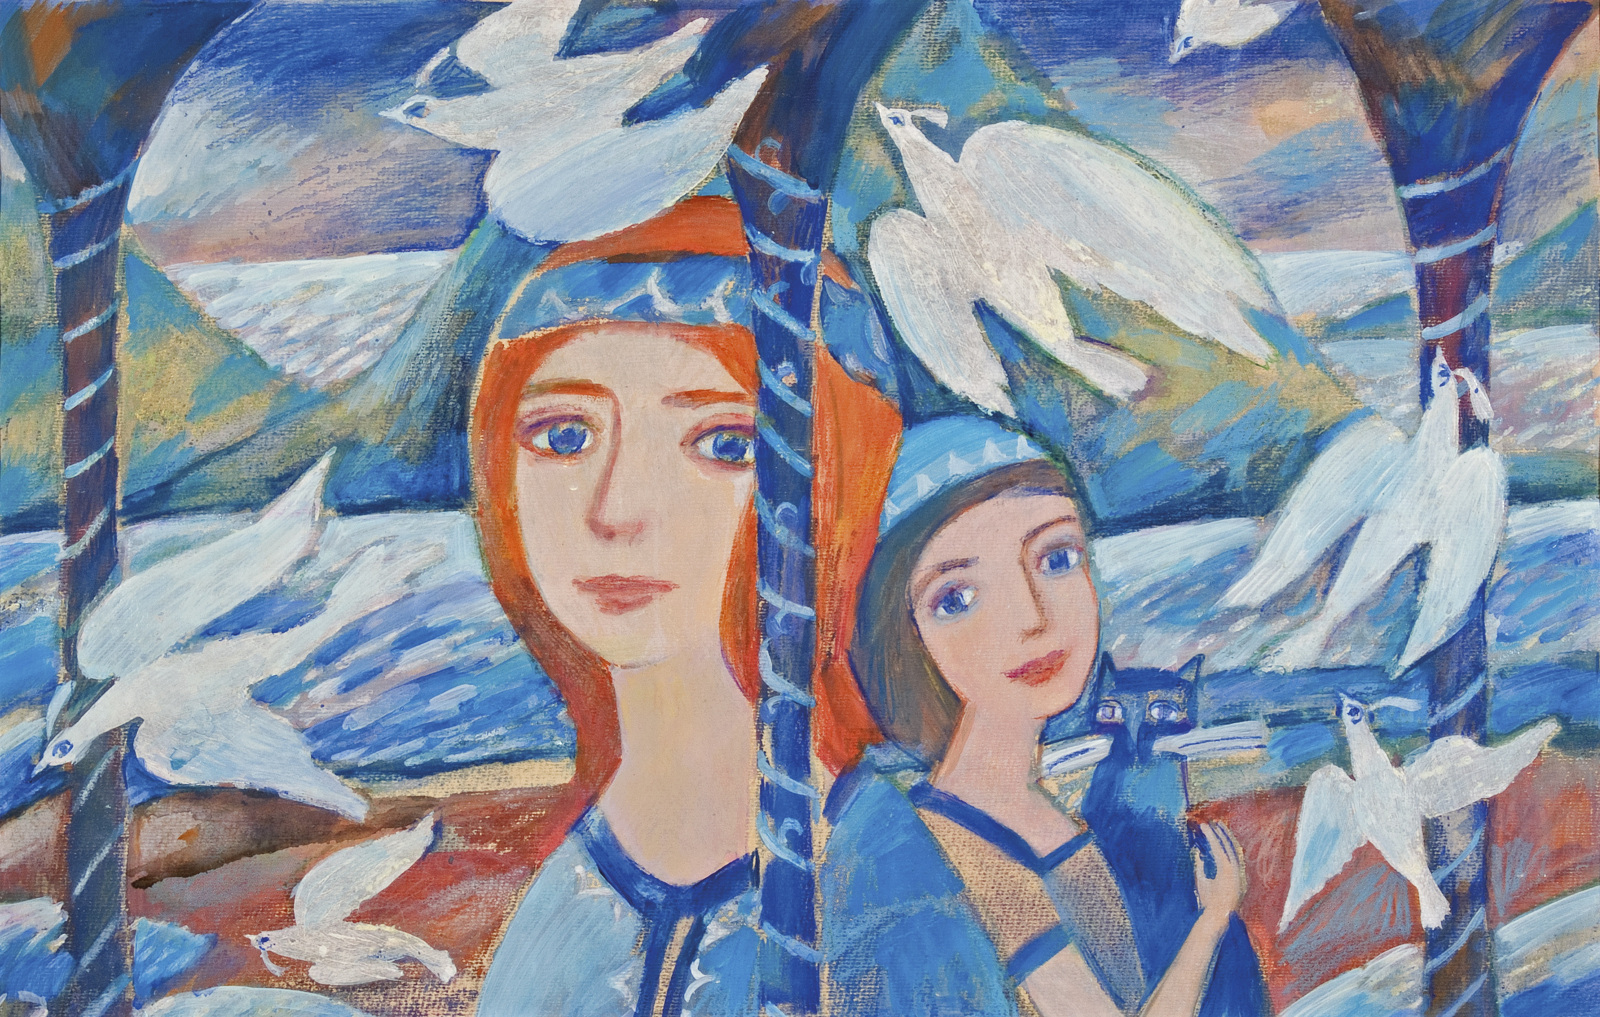    Мир сказки Елены Зарубовой | Двойной портрет на фоне бухты